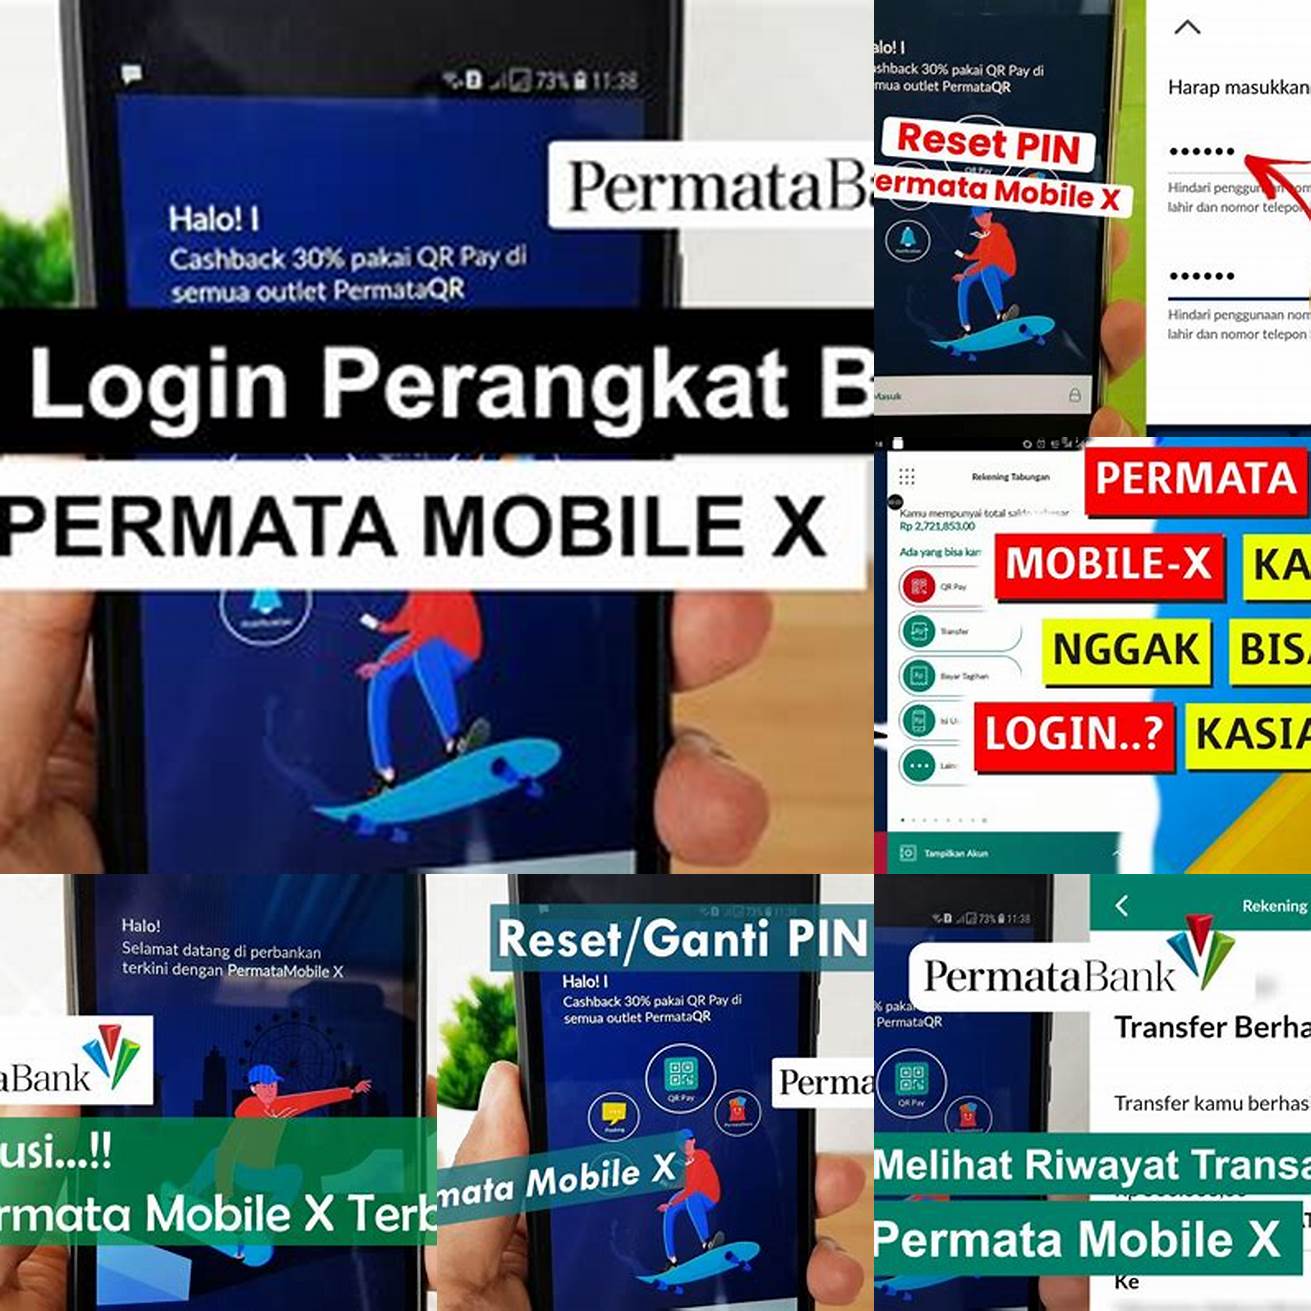 Jangan berbagi informasi login dan PIN Permata Mobile X dengan orang lain